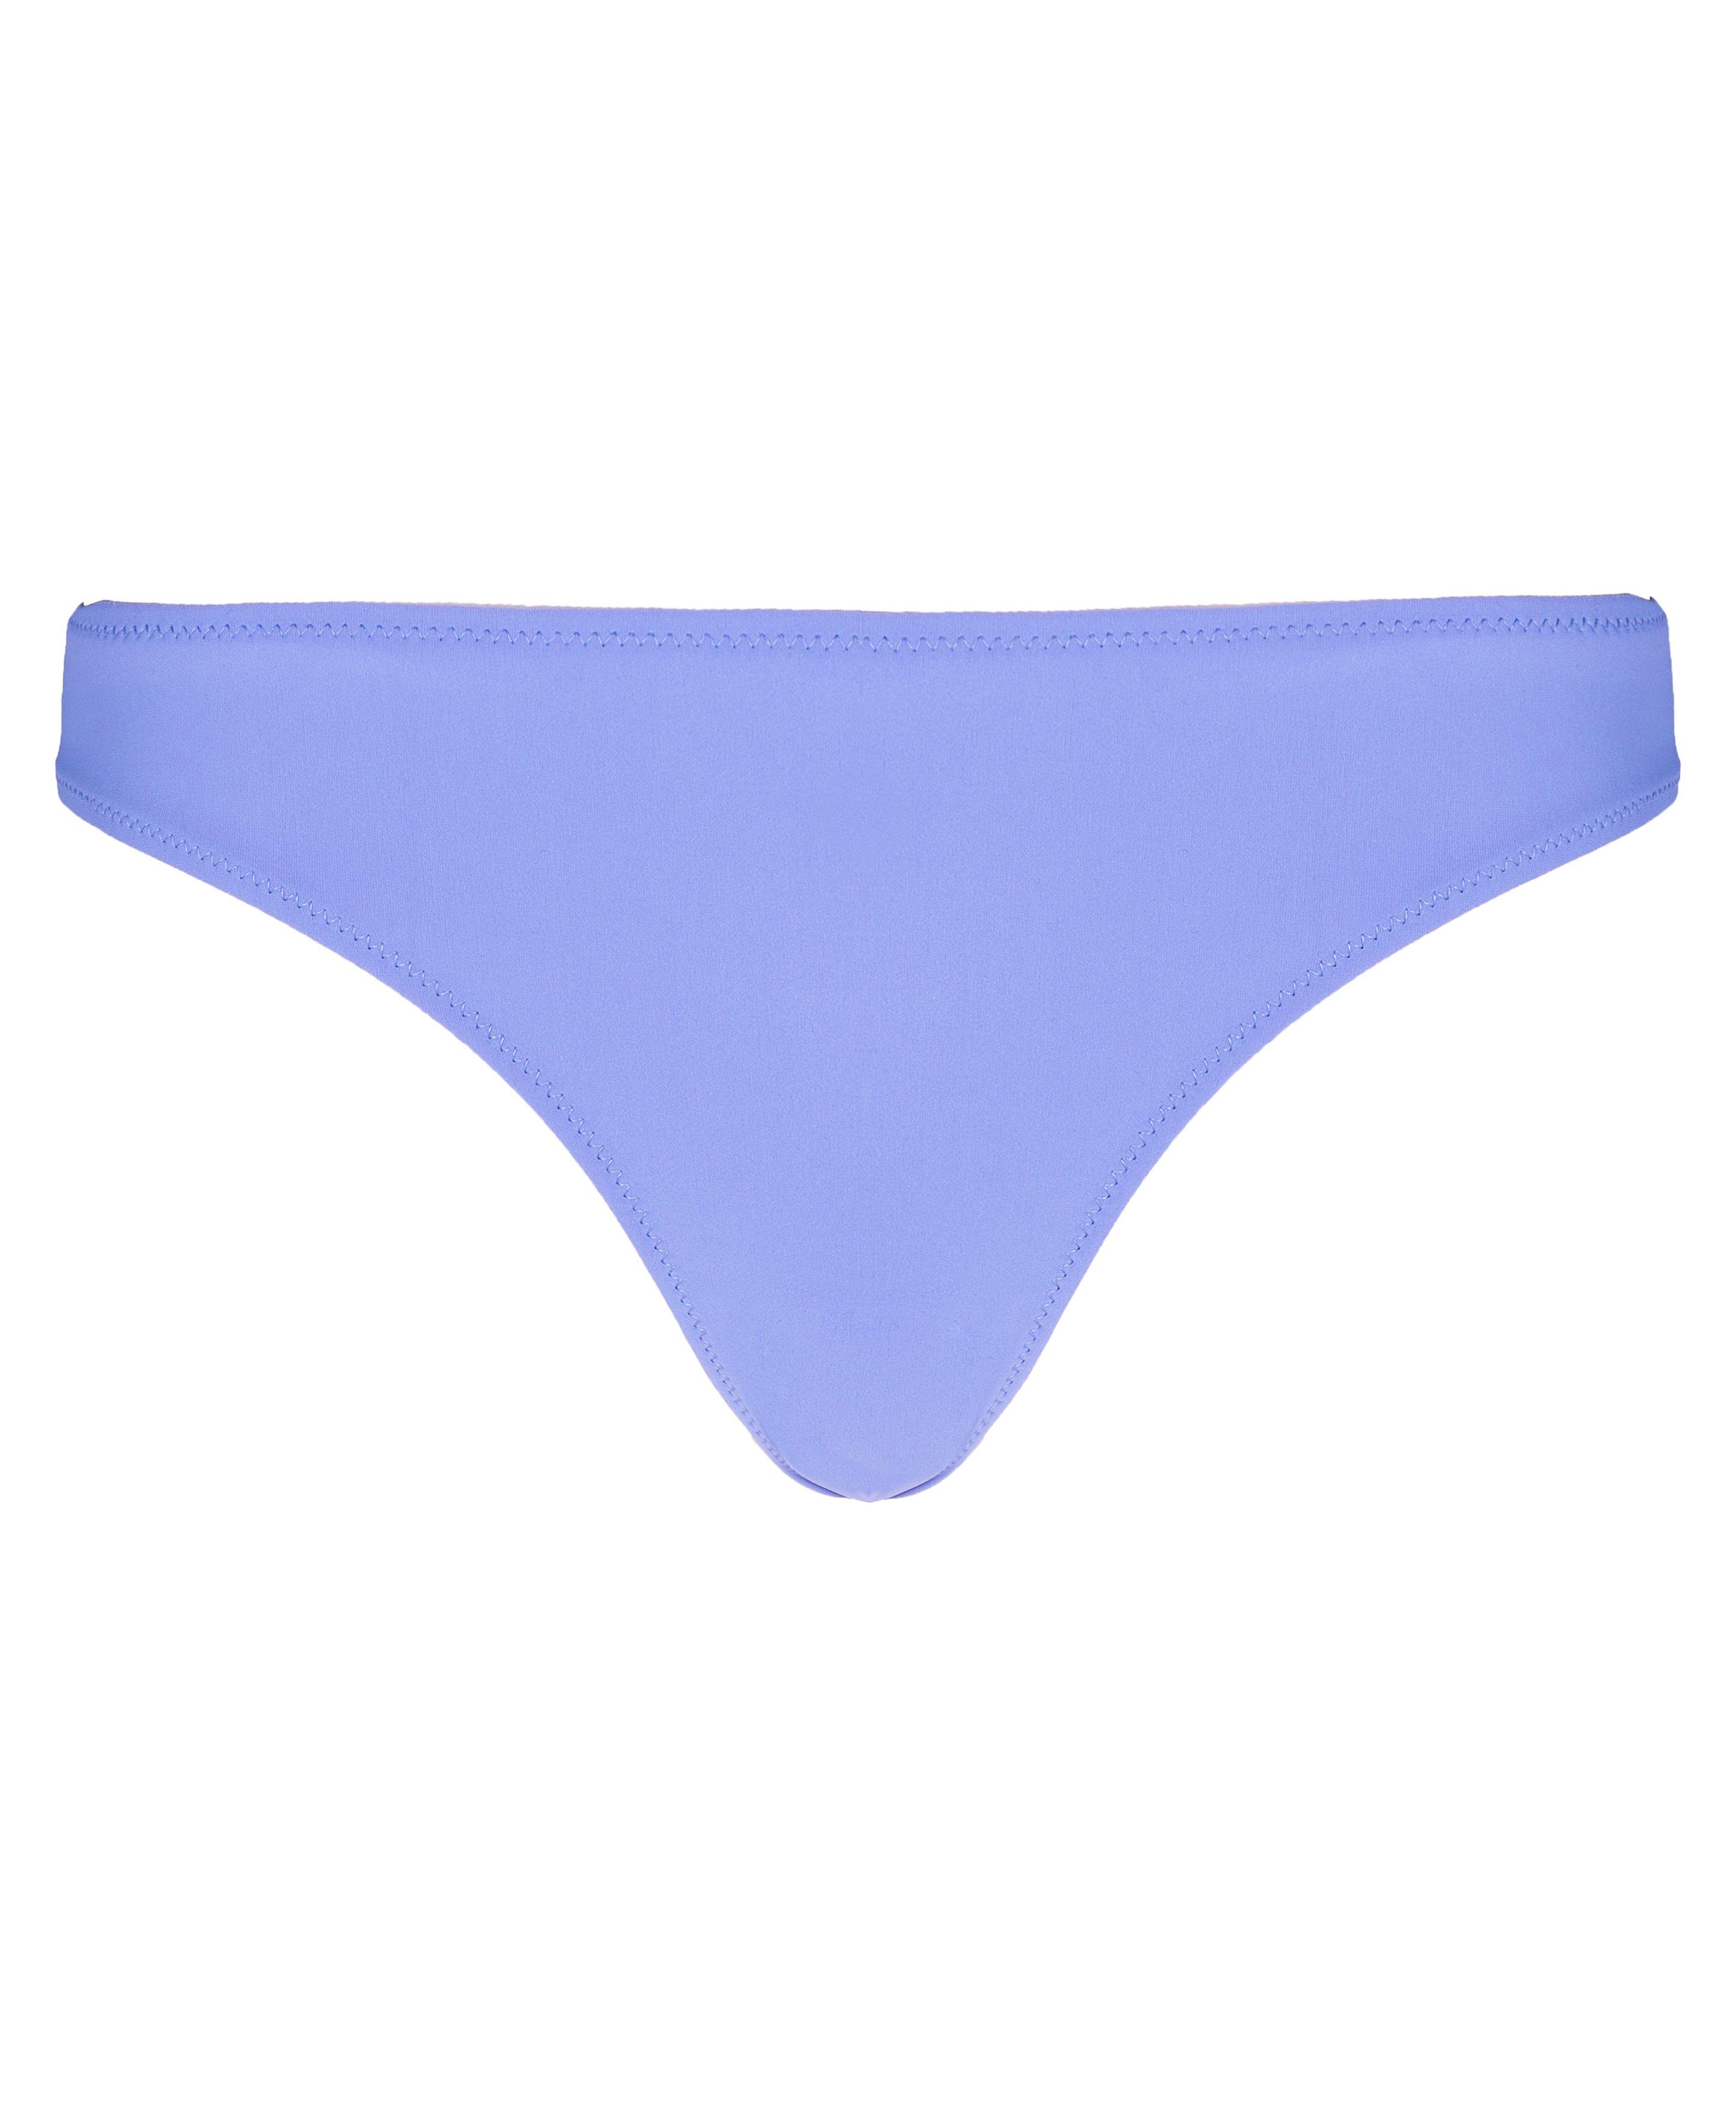 Peninsula Xtra Life Bikini Bottoms - Cornflower Blue